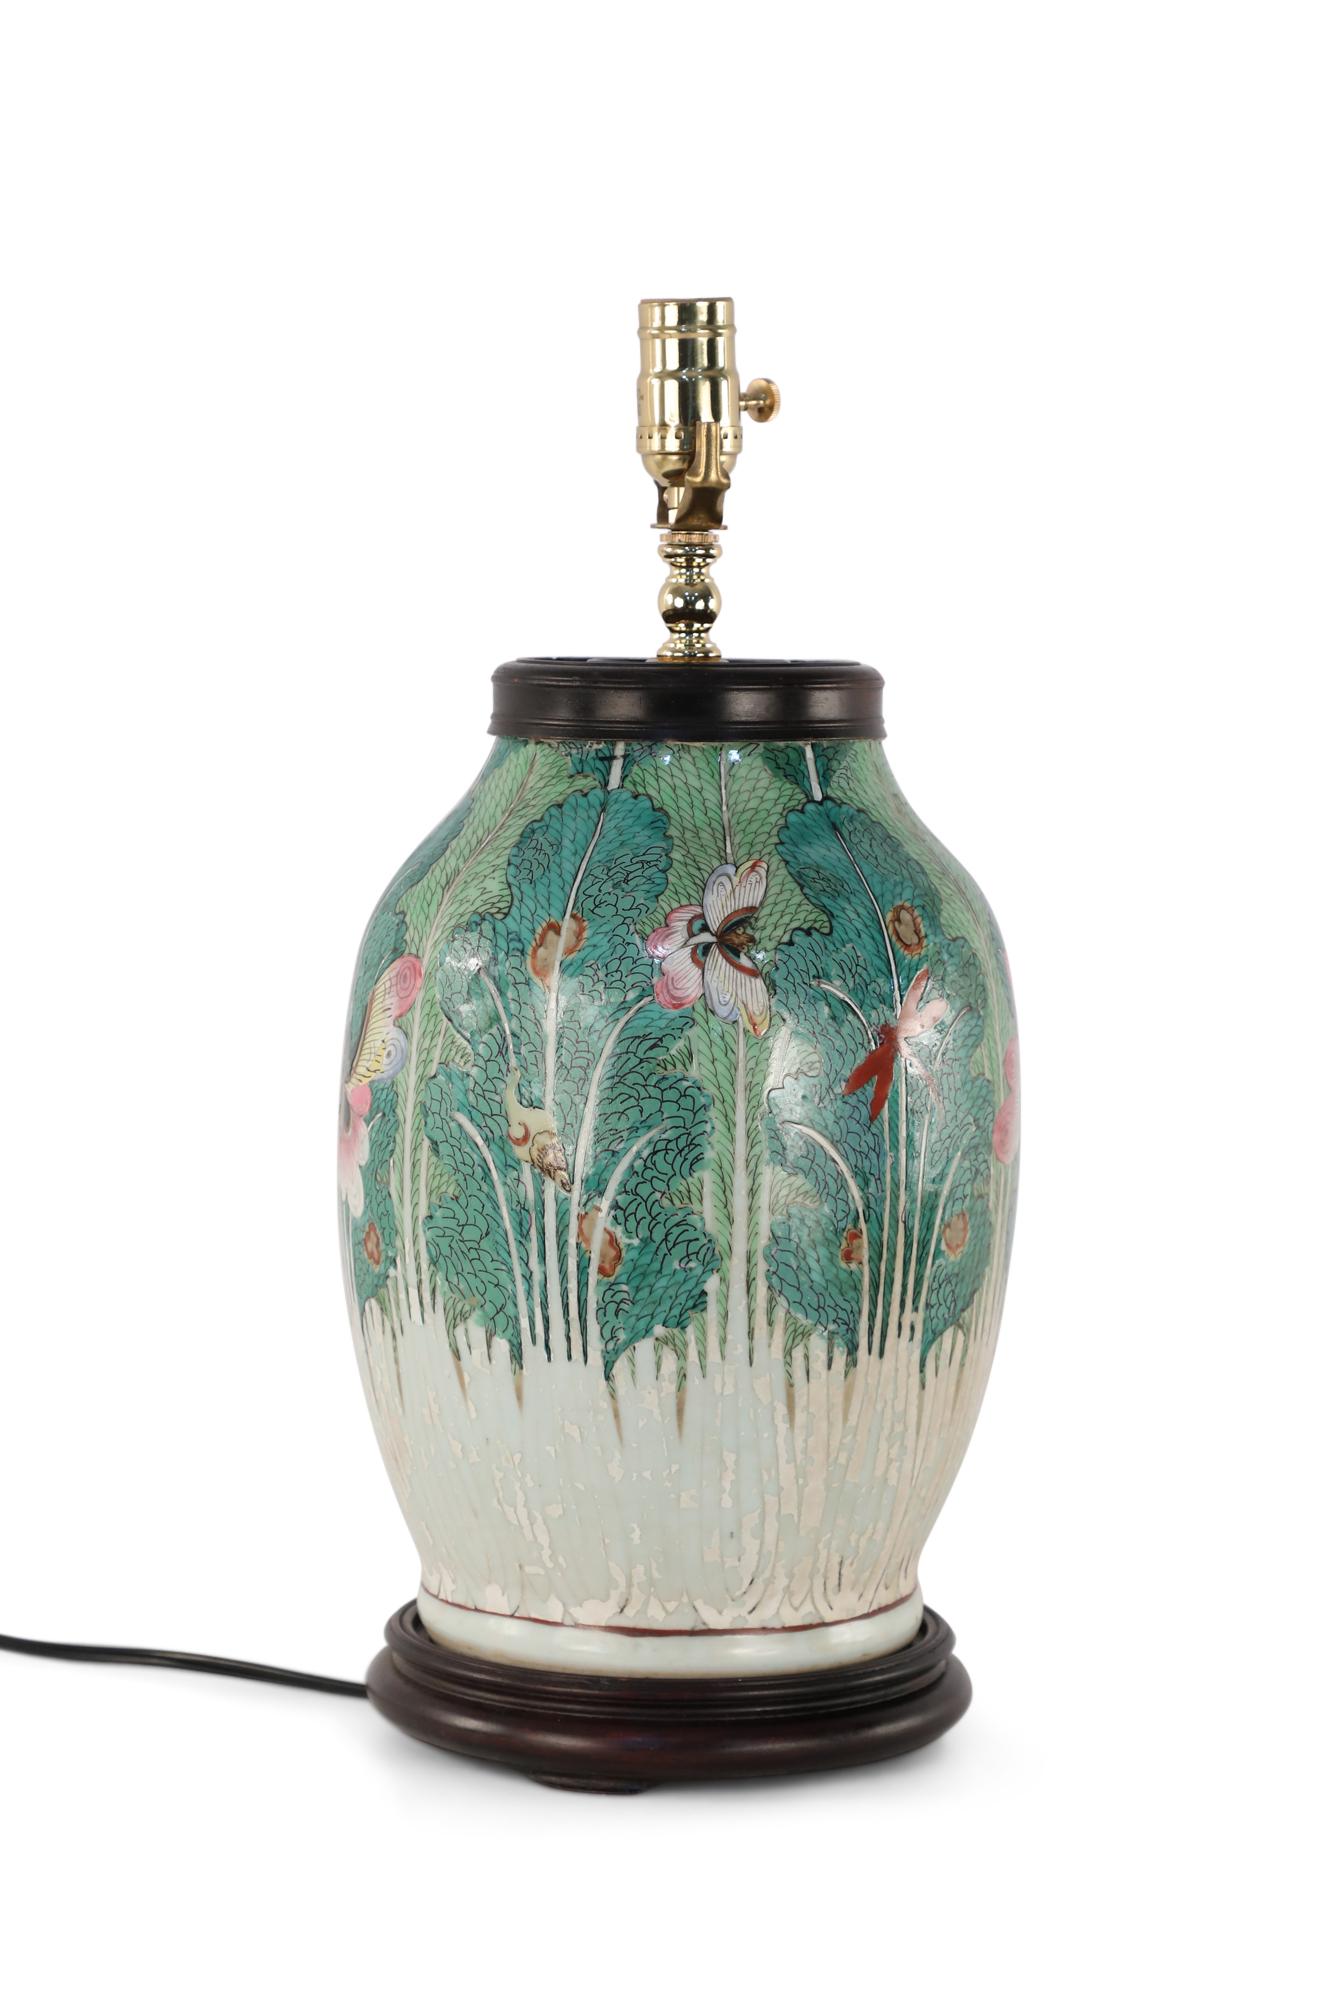 Chinesische Tischlampe aus dem frühen 20. Jahrhundert, bestehend aus einer Vase, die mit einem komplizierten grünen Motiv aus Flora und Libellen bemalt ist, und einem Holzsockel.